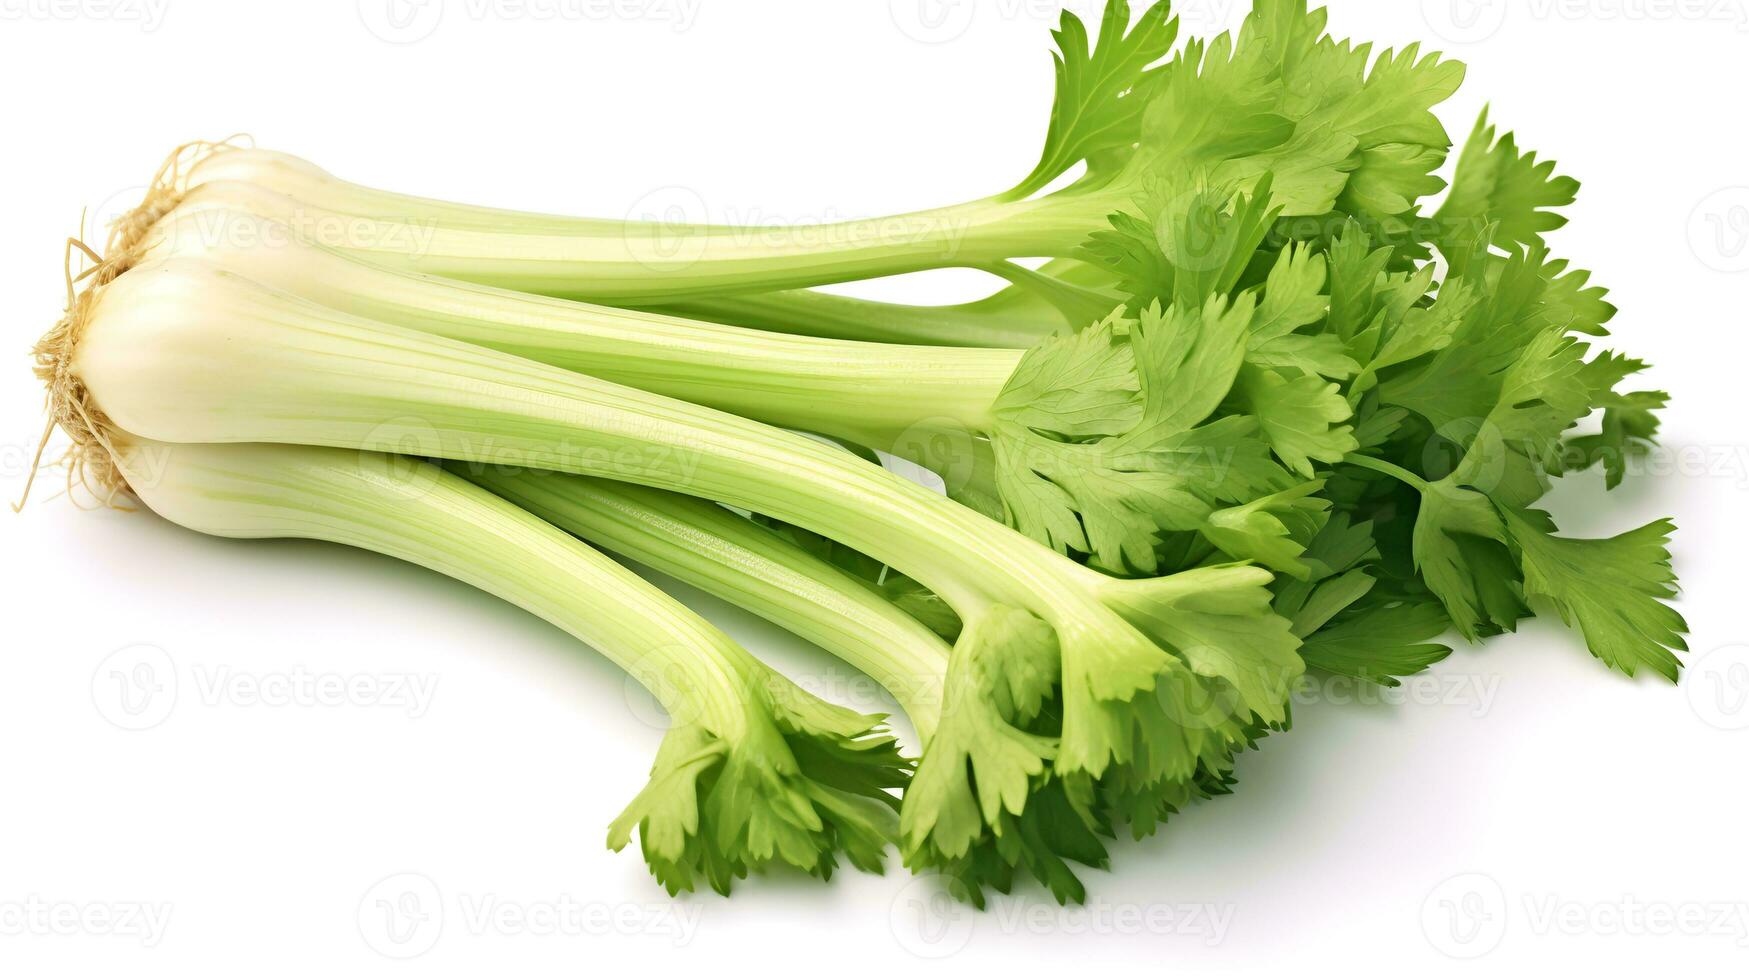 Photo of Celery isolated on white background